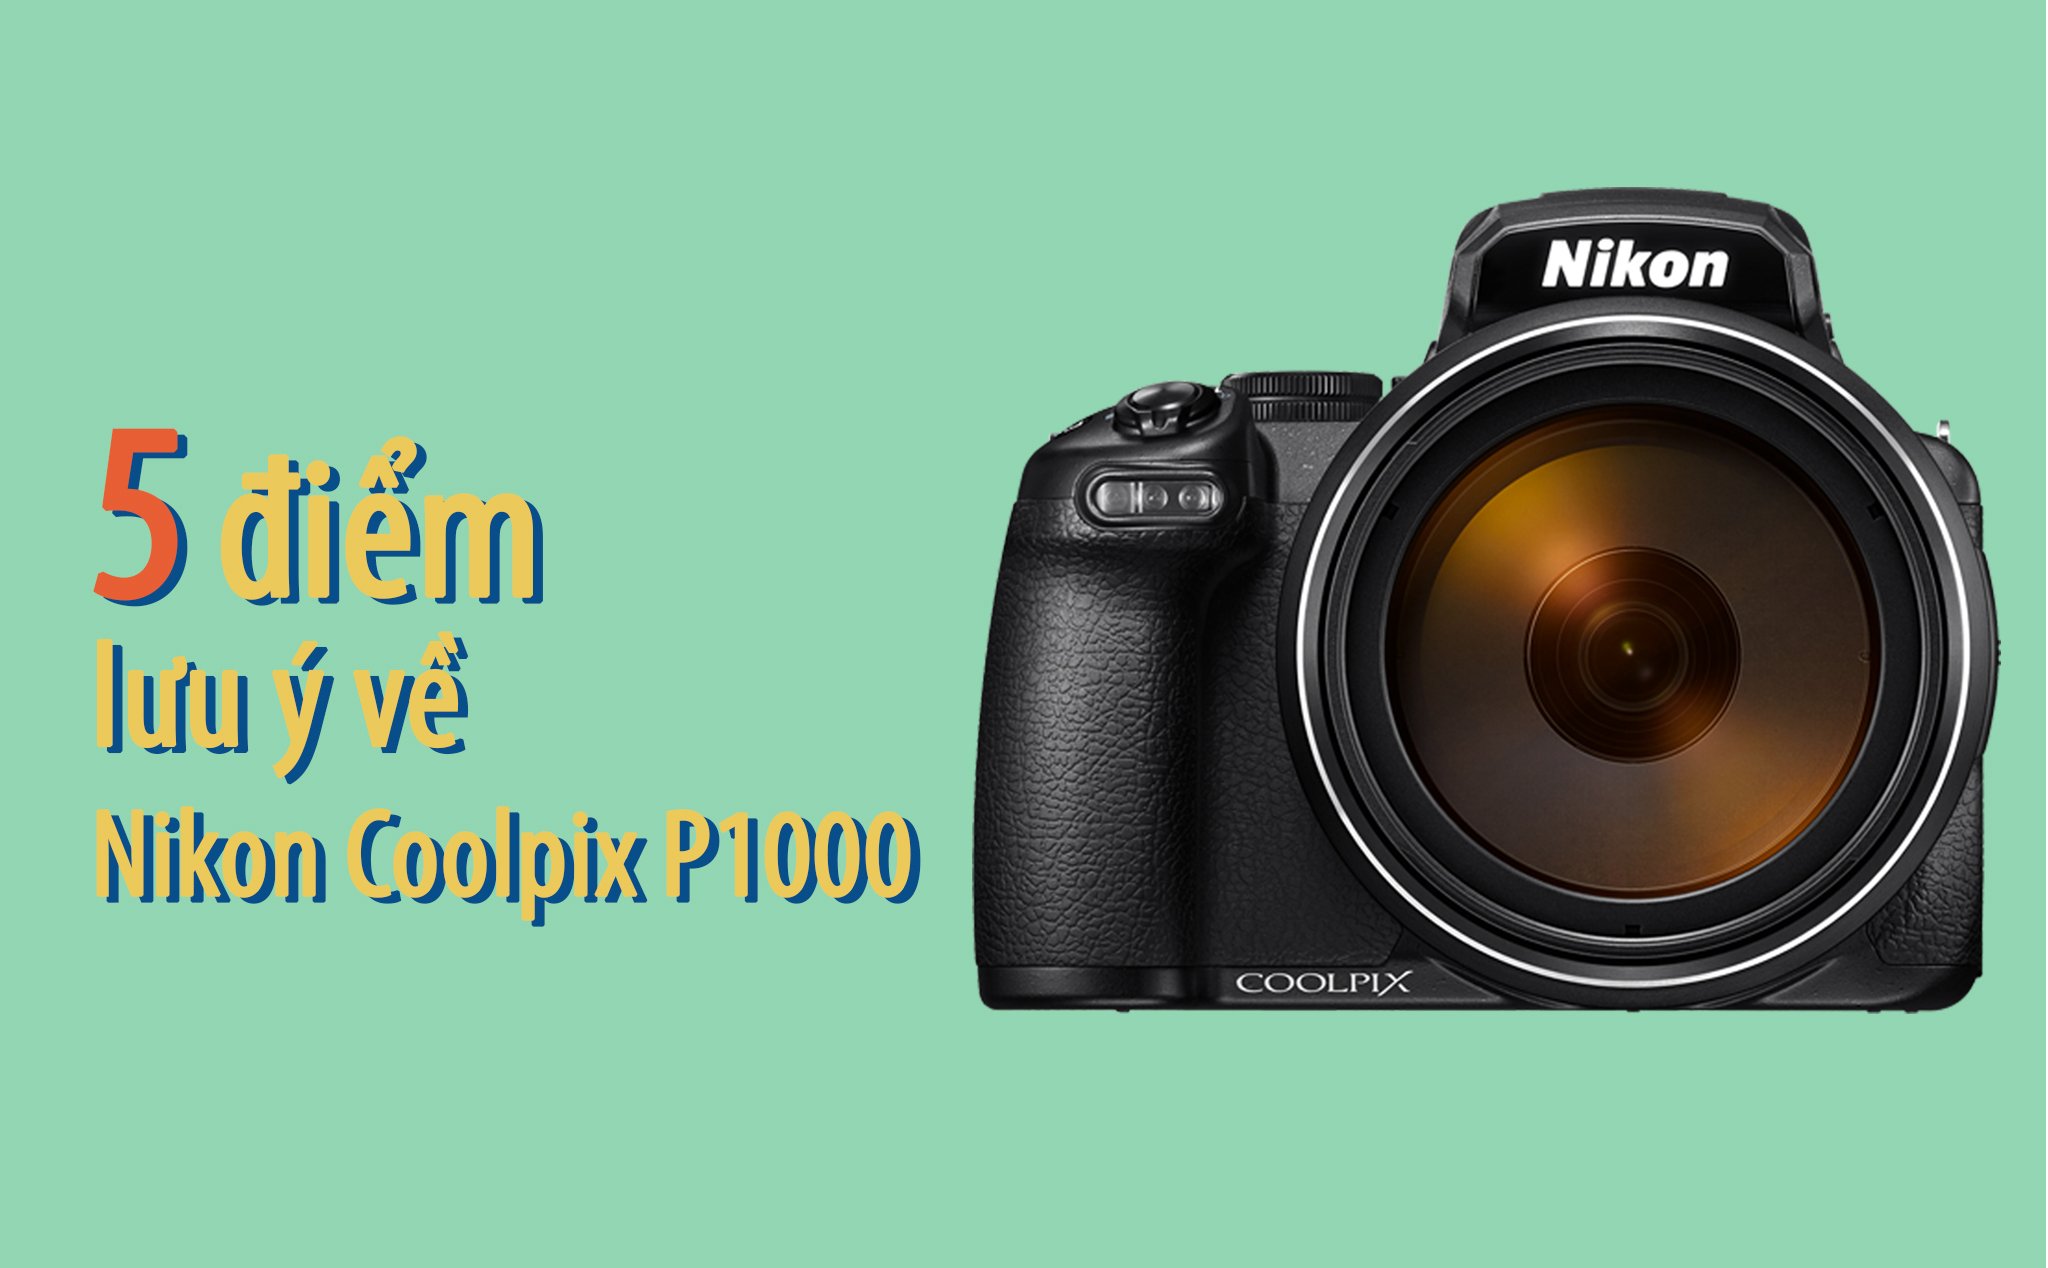 5 điểm lưu ý của Nikon Coolpix P1000